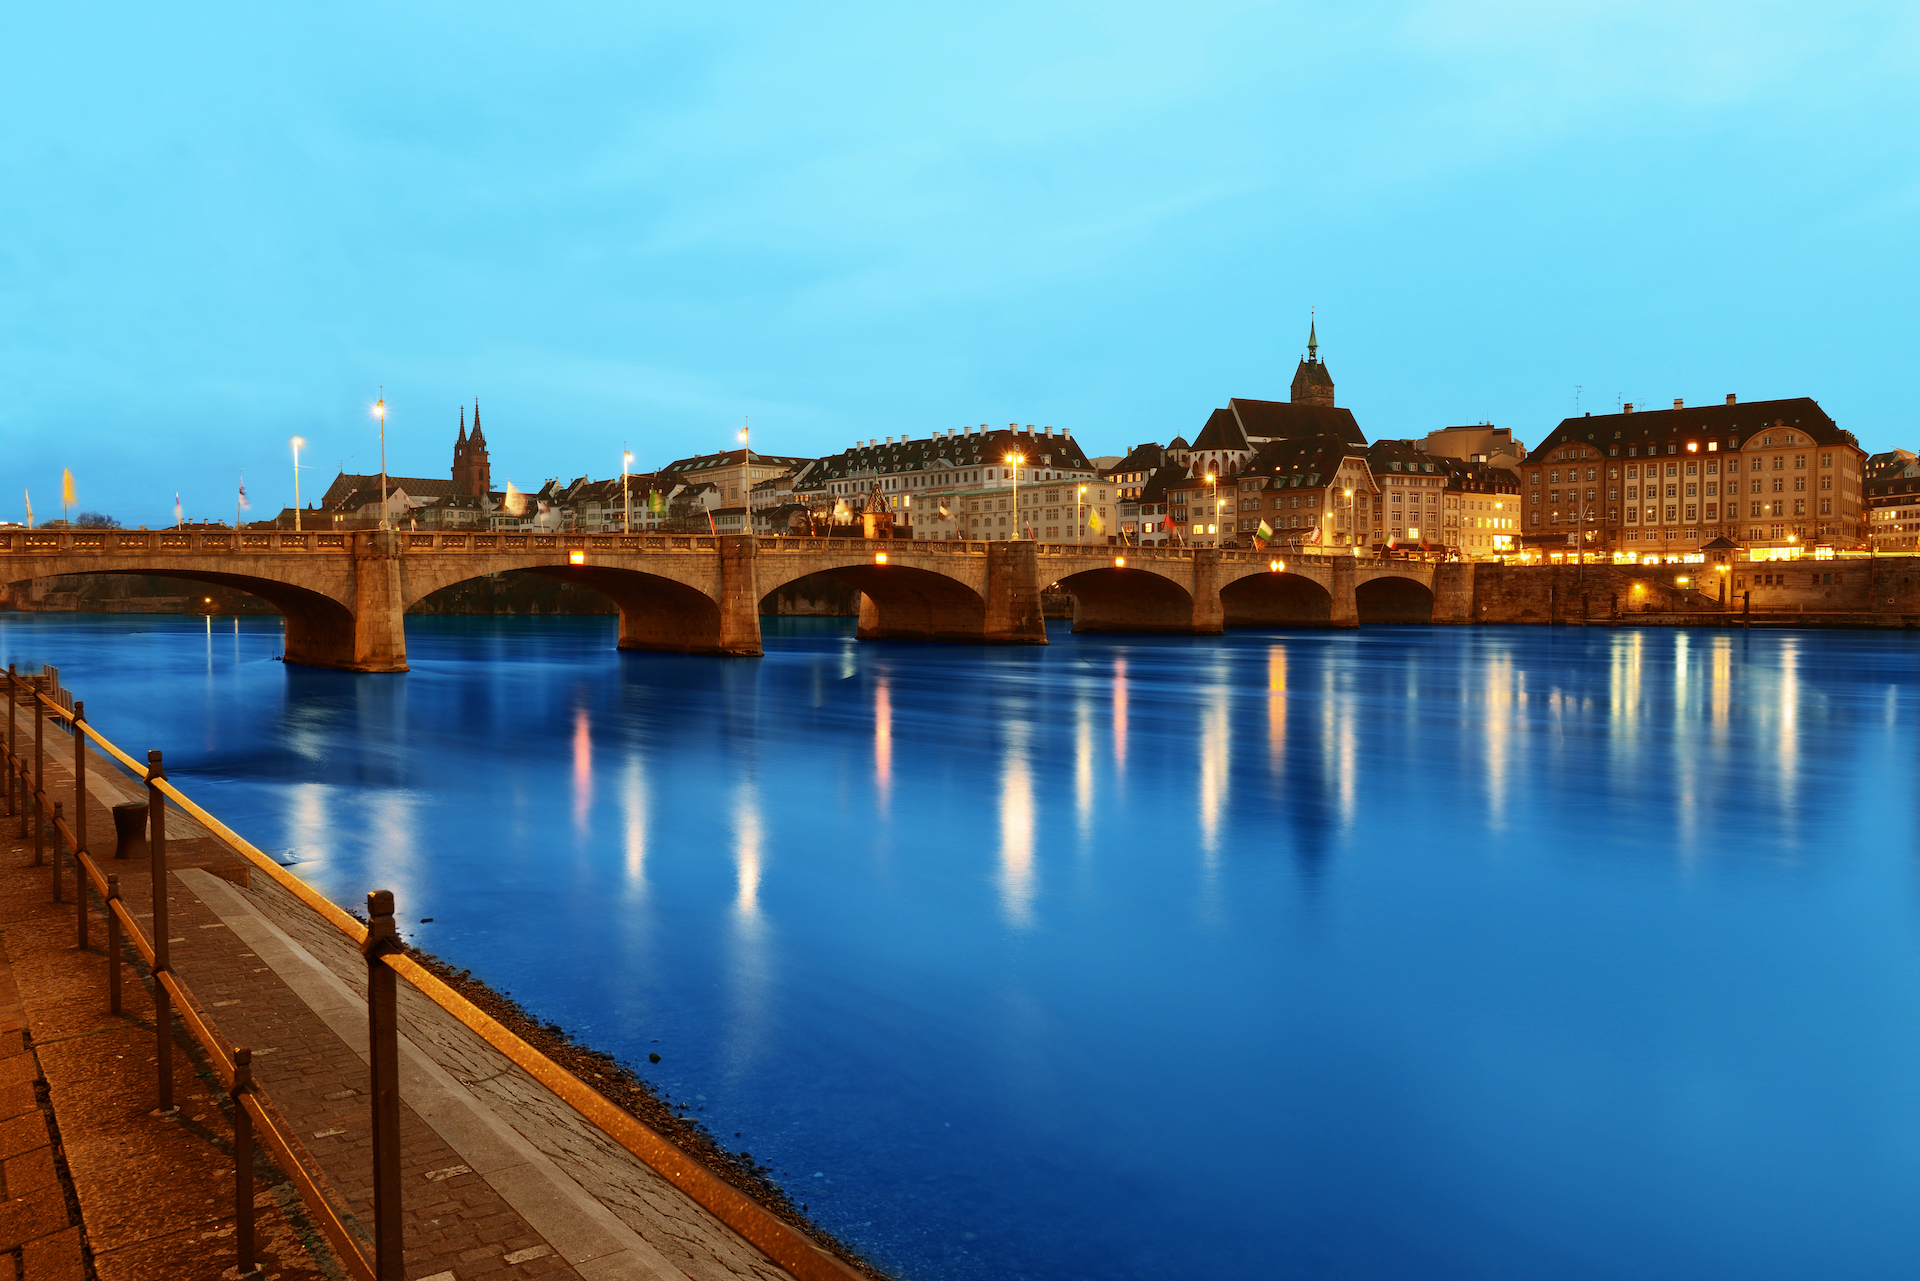 Entdecke die Schönheit von Basel auf diesem atemberaubenden Bild: Historische Architektur, lebendige Kultur und malerische Lage am Rhein verein